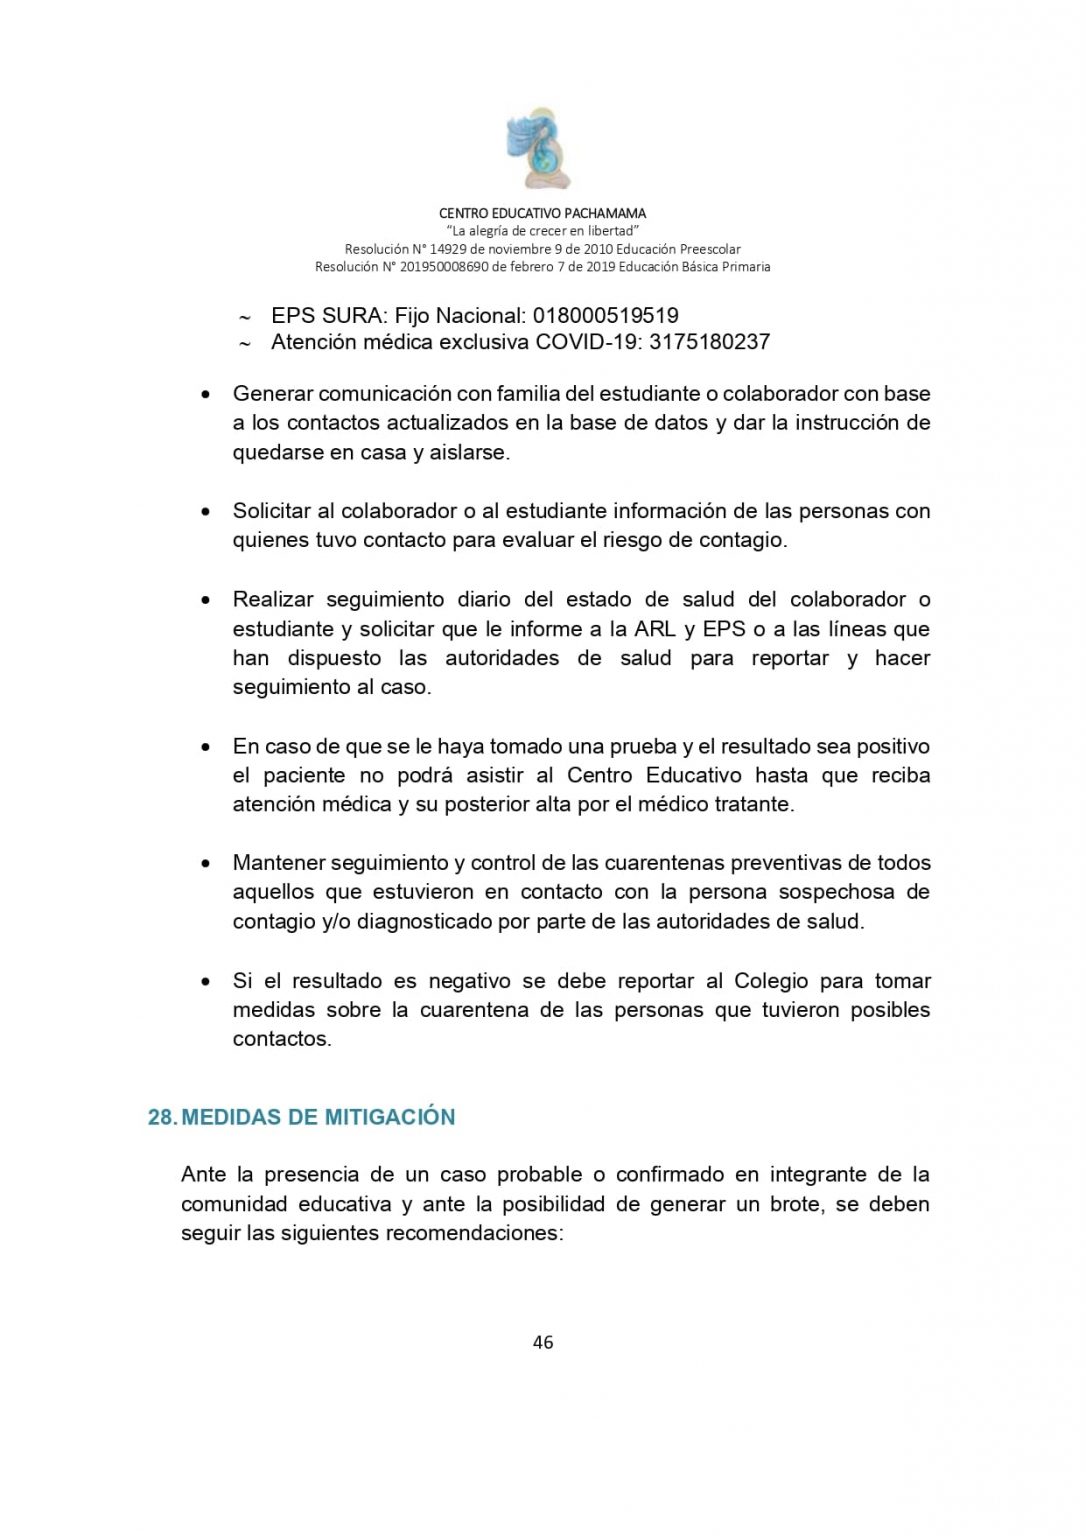 PROTOCOLO DE BIOSEGURIDAD PACHAMAMA Última Versión (3)-convertido_page-0046